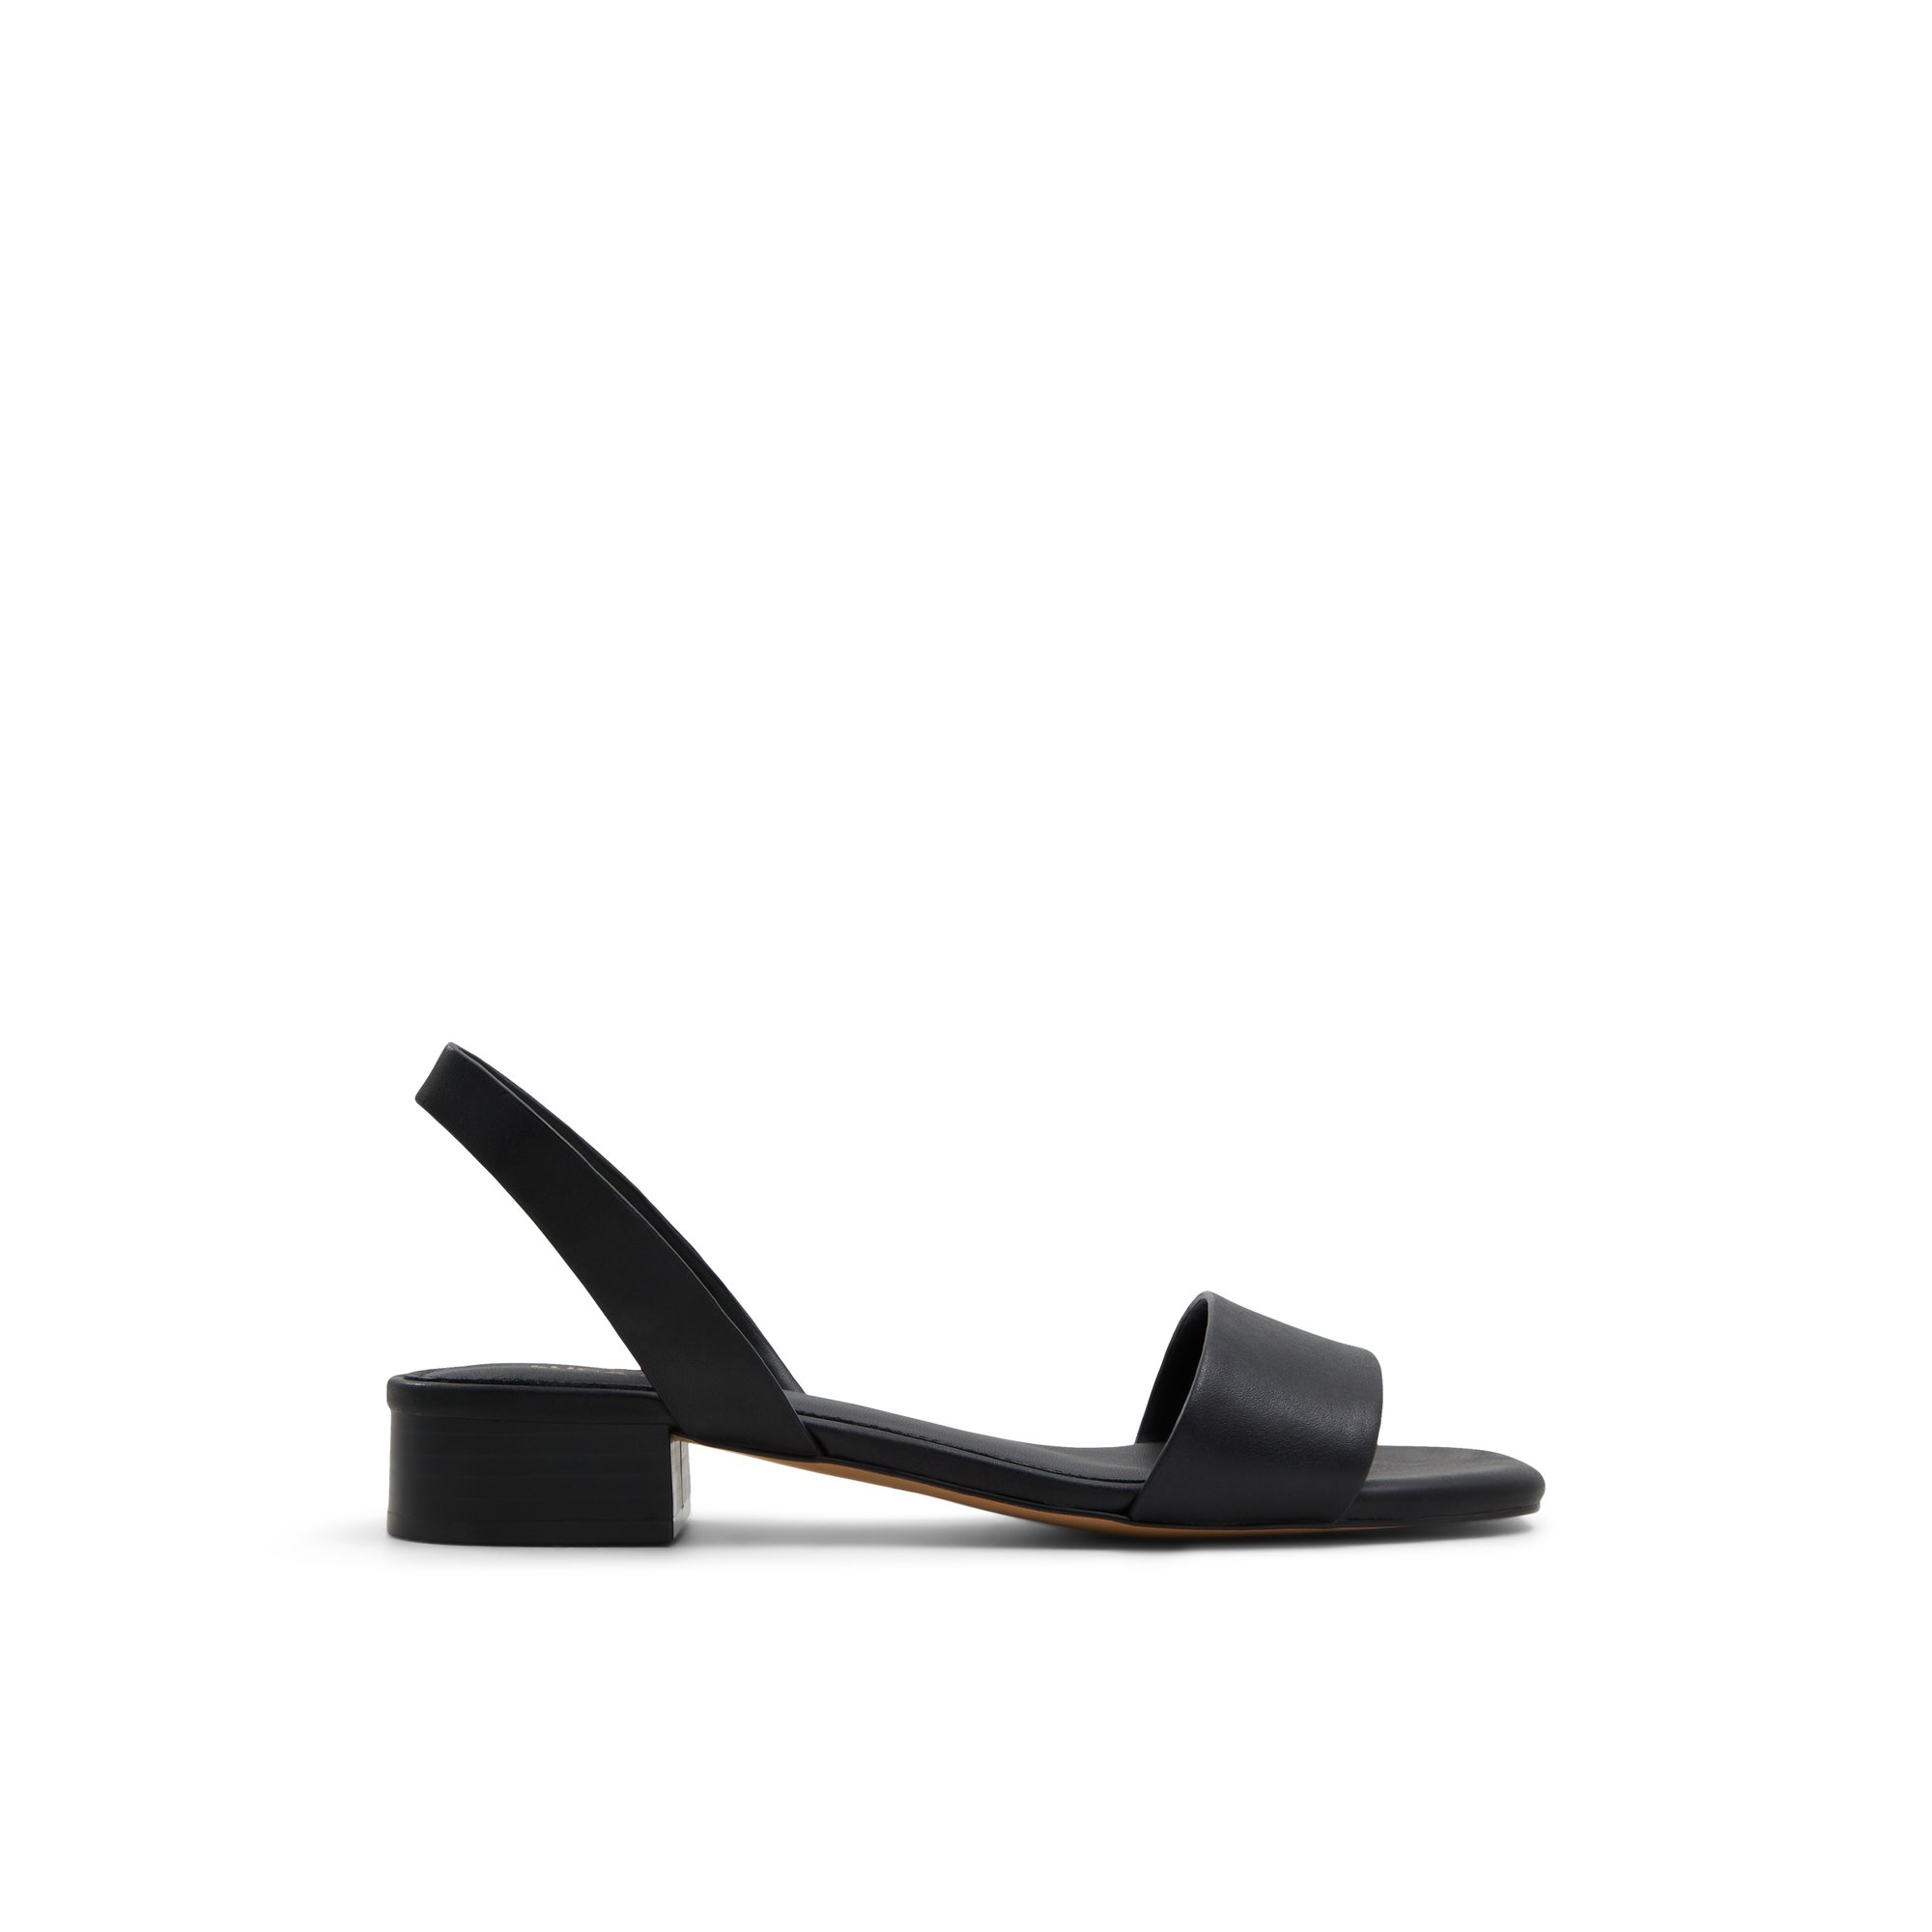 Luca Ferri Etusien - Women's Footwear Sandals Heels